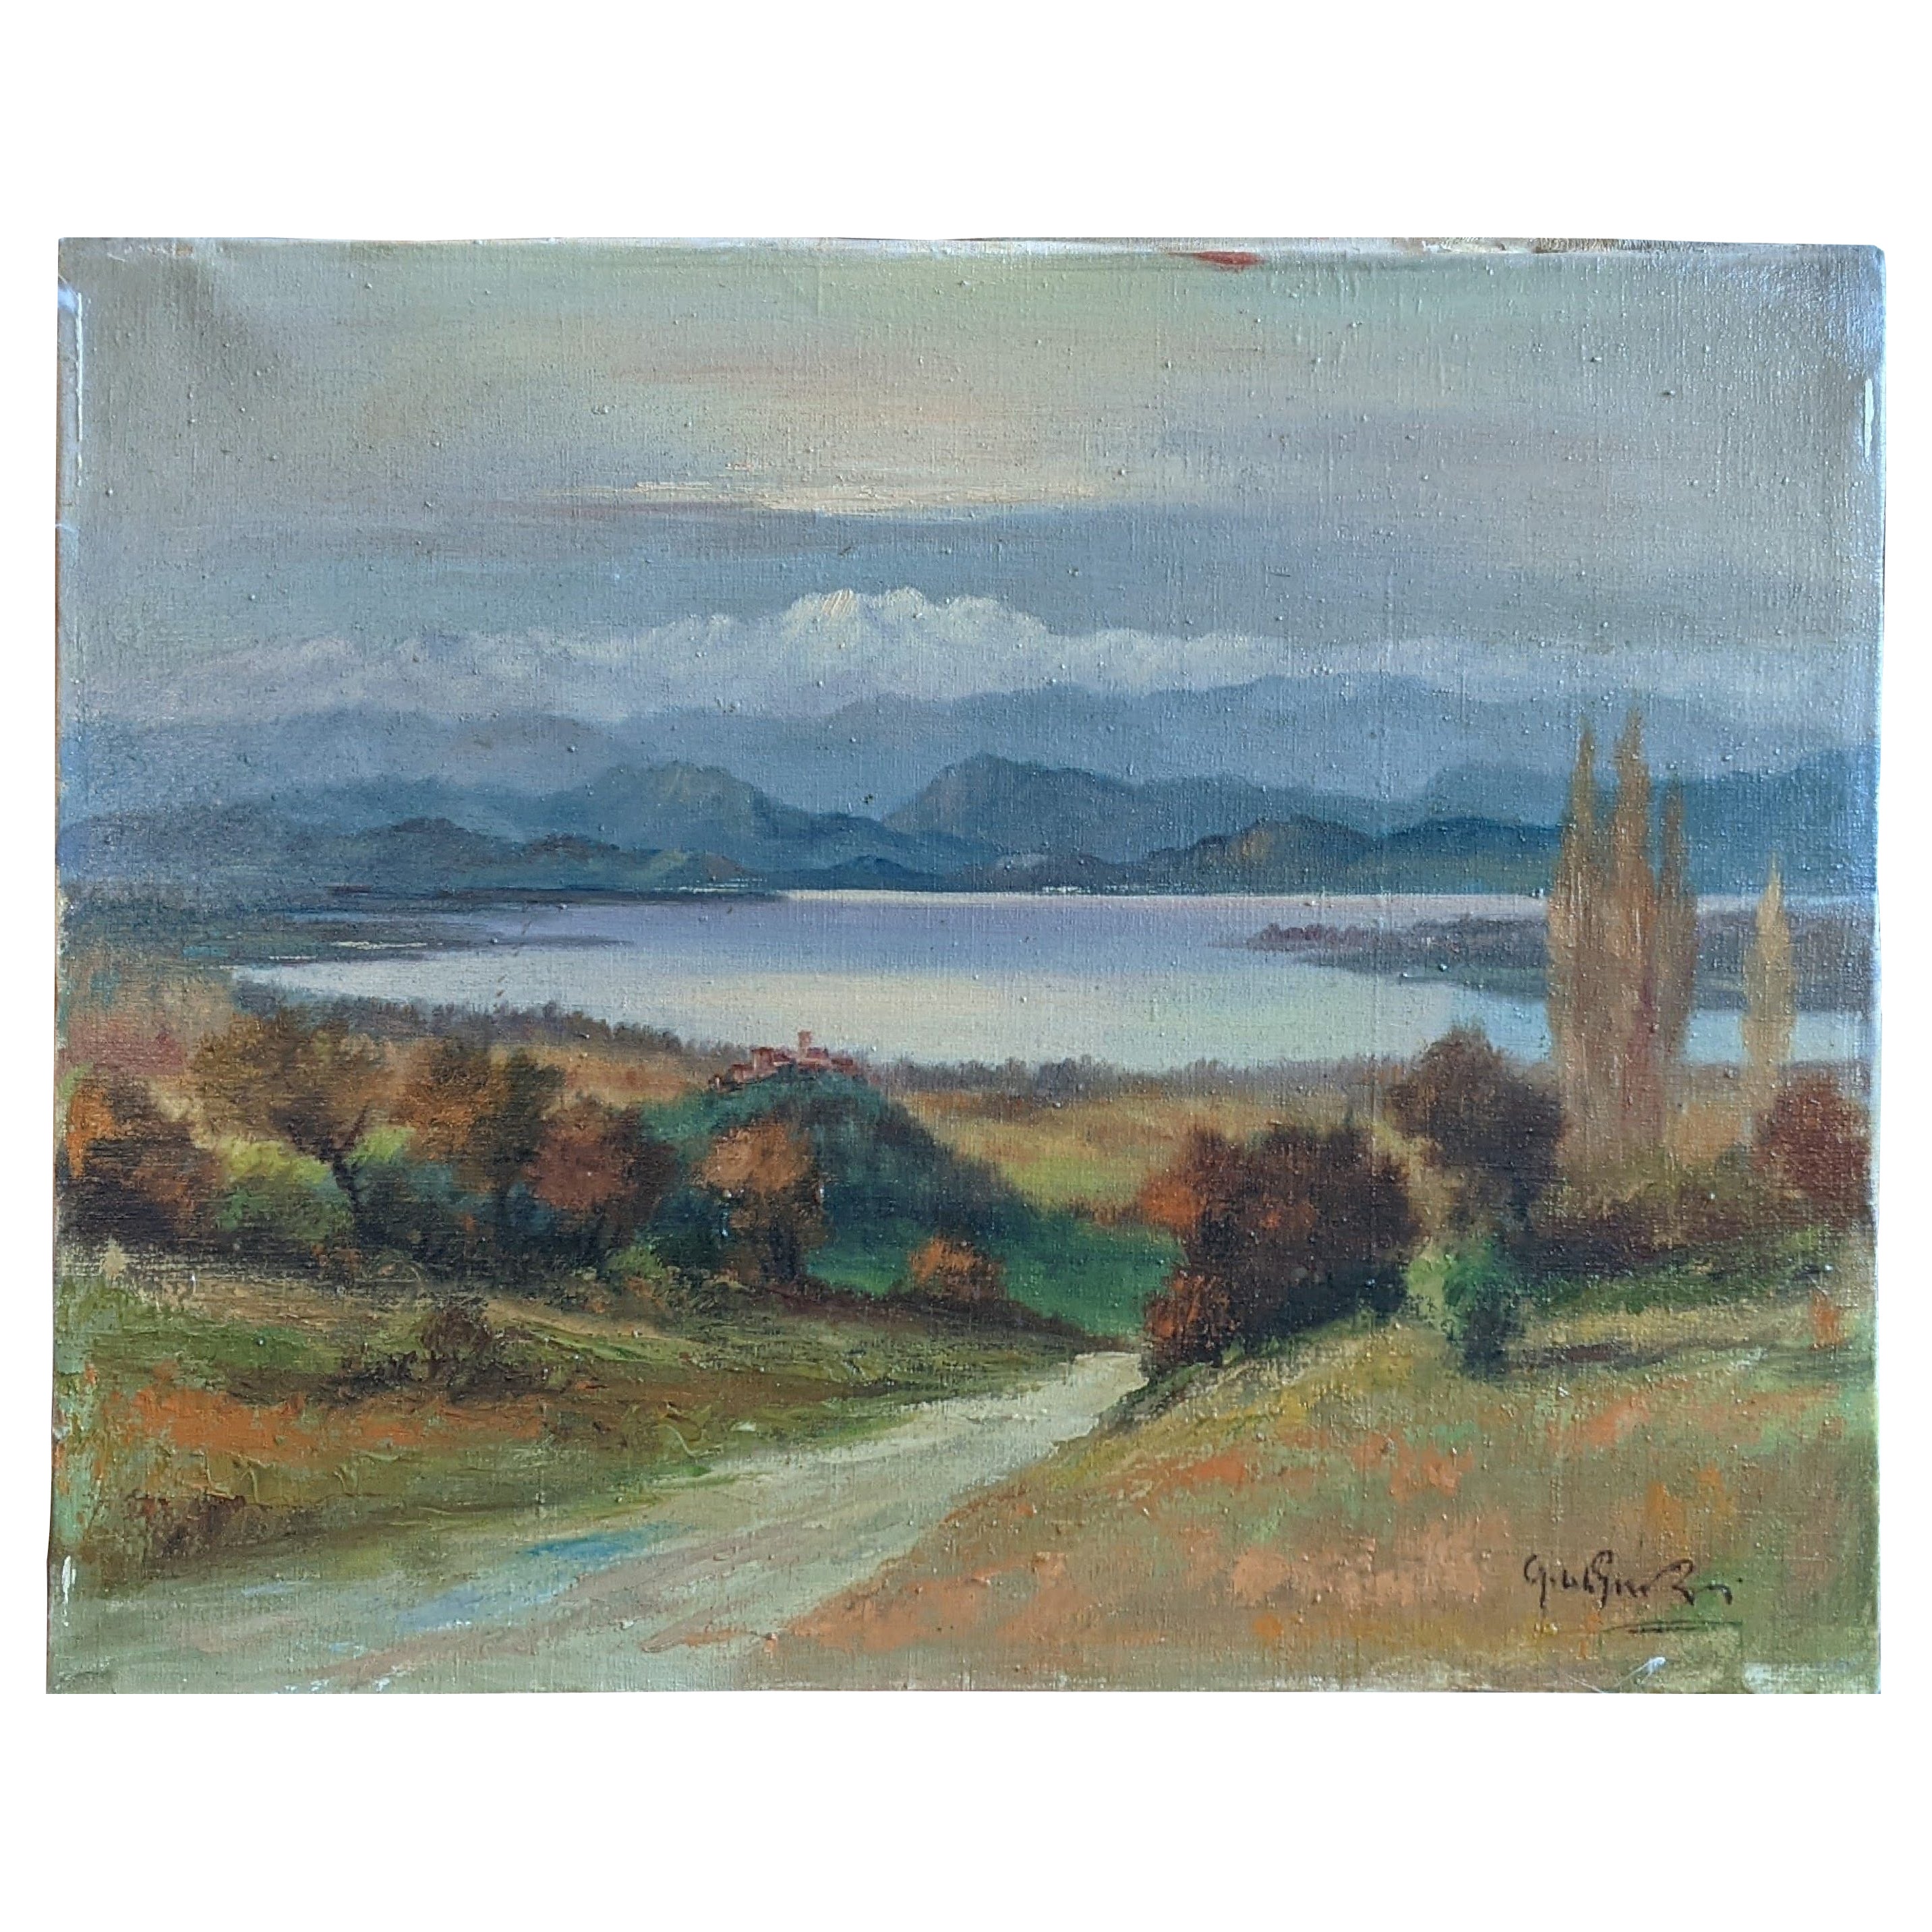 Landscape, Lago di Varese, "Guido Gnocchi", Oil on Canvas, Early 1900s